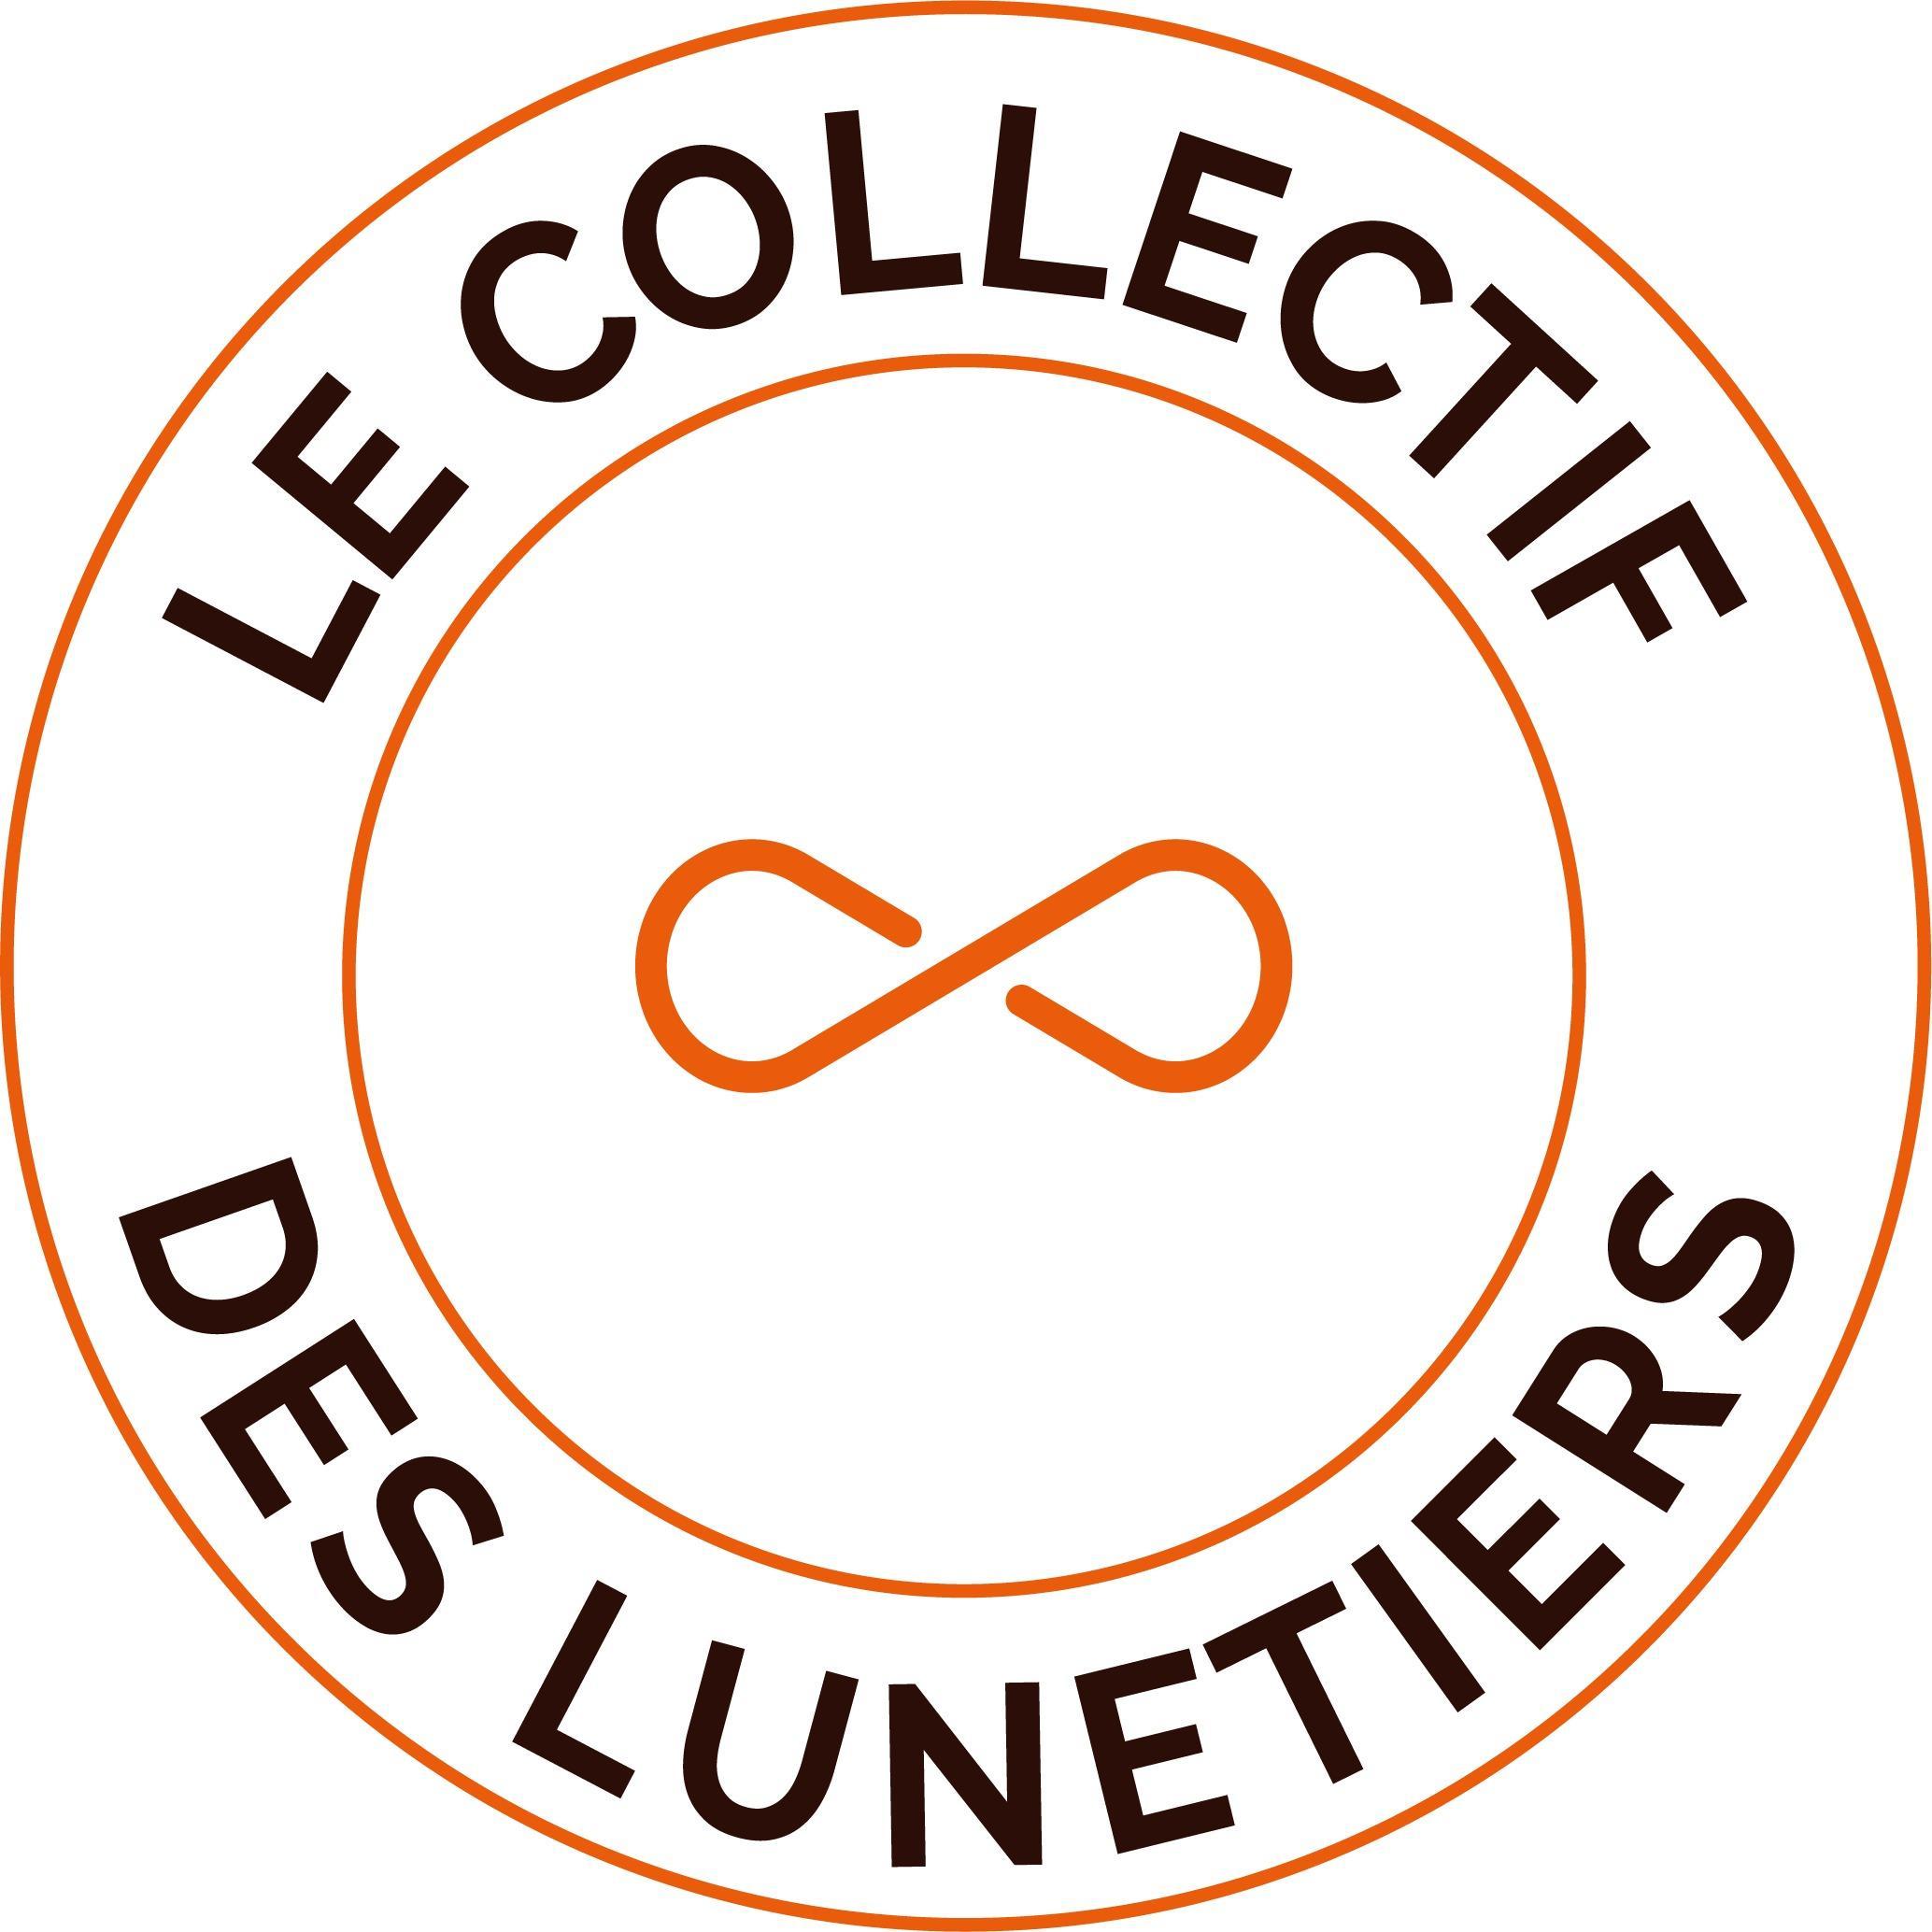 Le Collectif Des Lunetiers Montalieu Vercieu